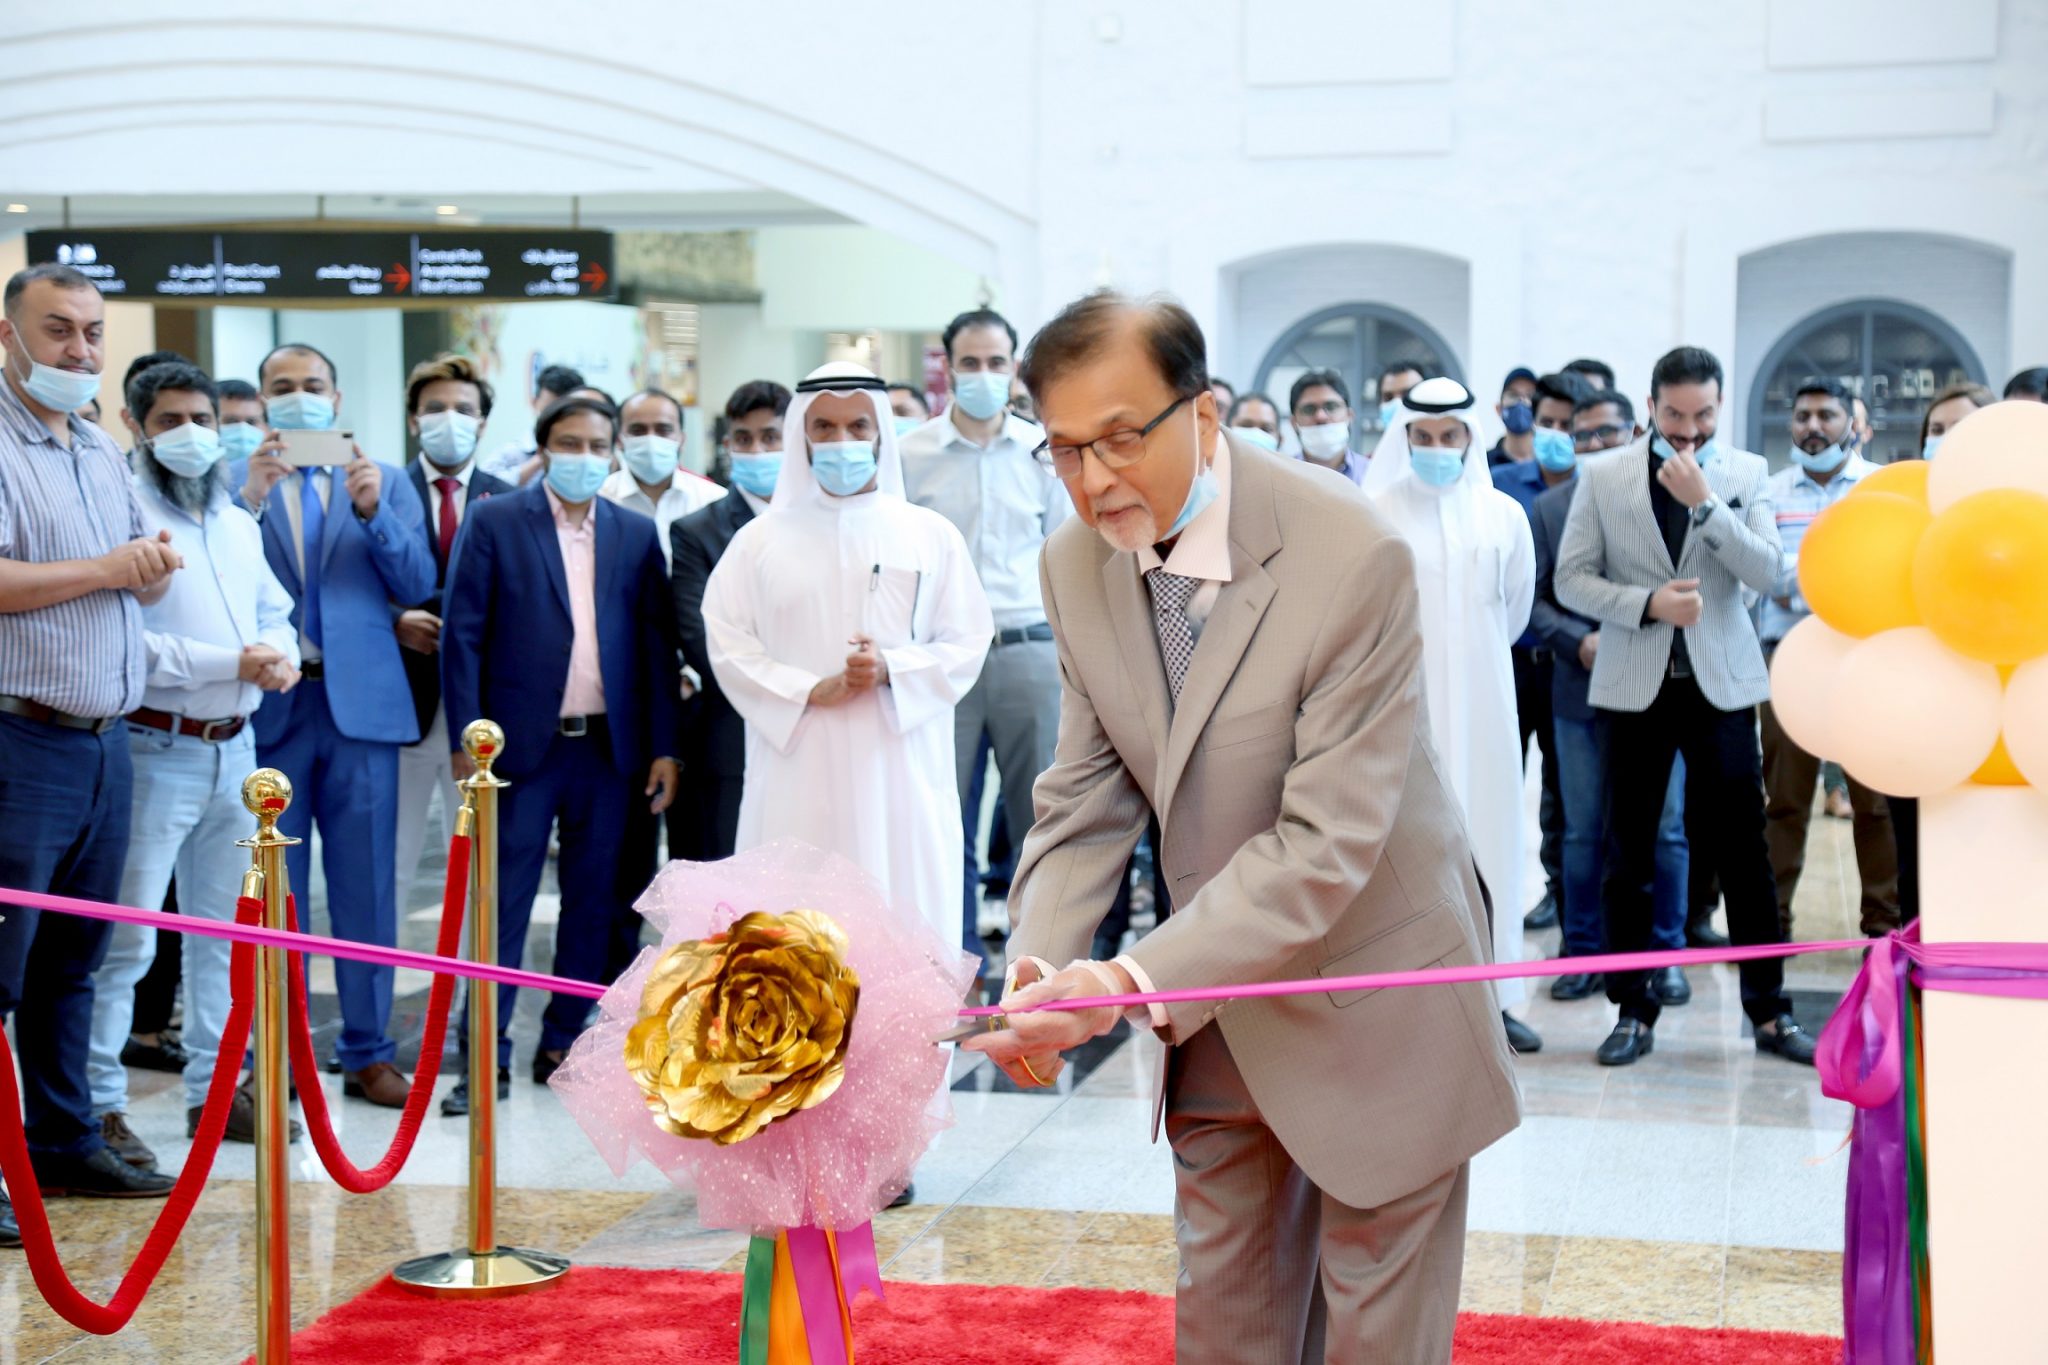 حول الإمارات للمفروشات المنزلية تستعد لإفتتاح متجر جديد في أبوظبي